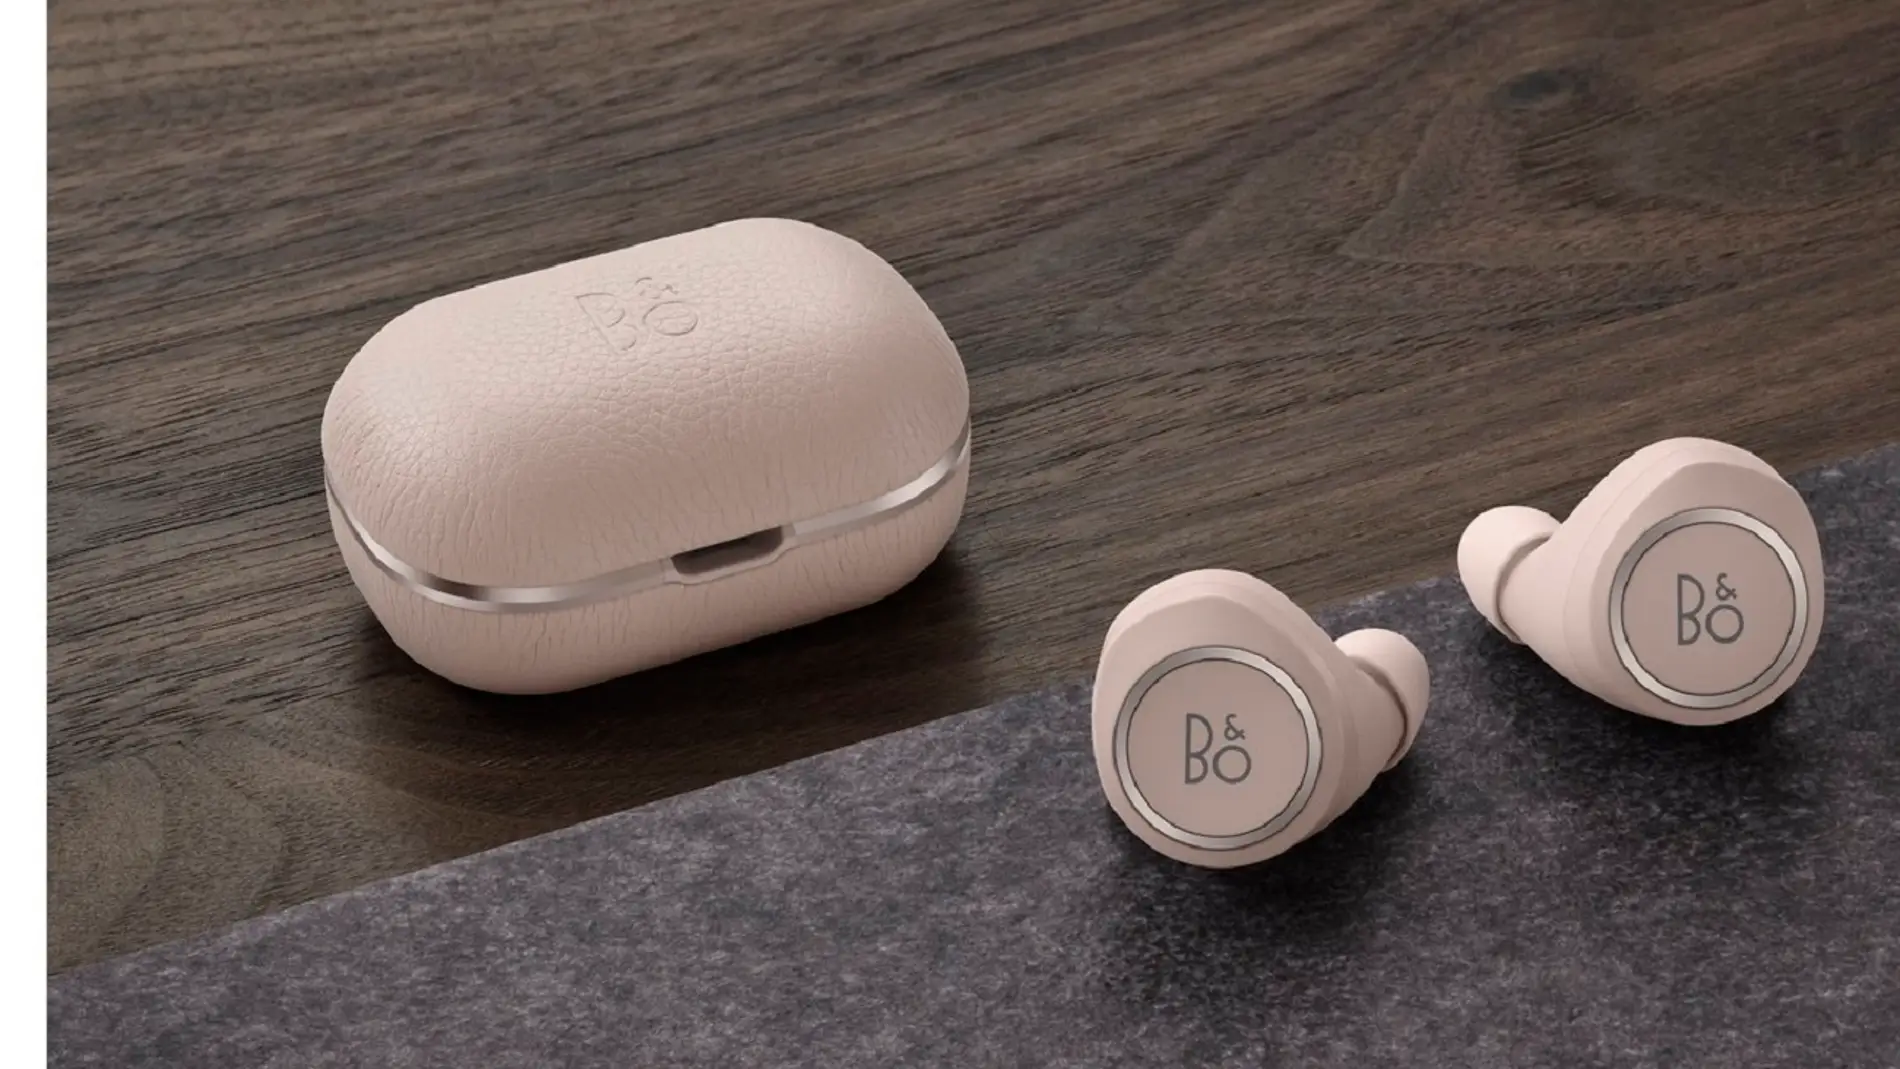 Unos auriculares Bluetooth con 15 horas de autonomía y resistencia